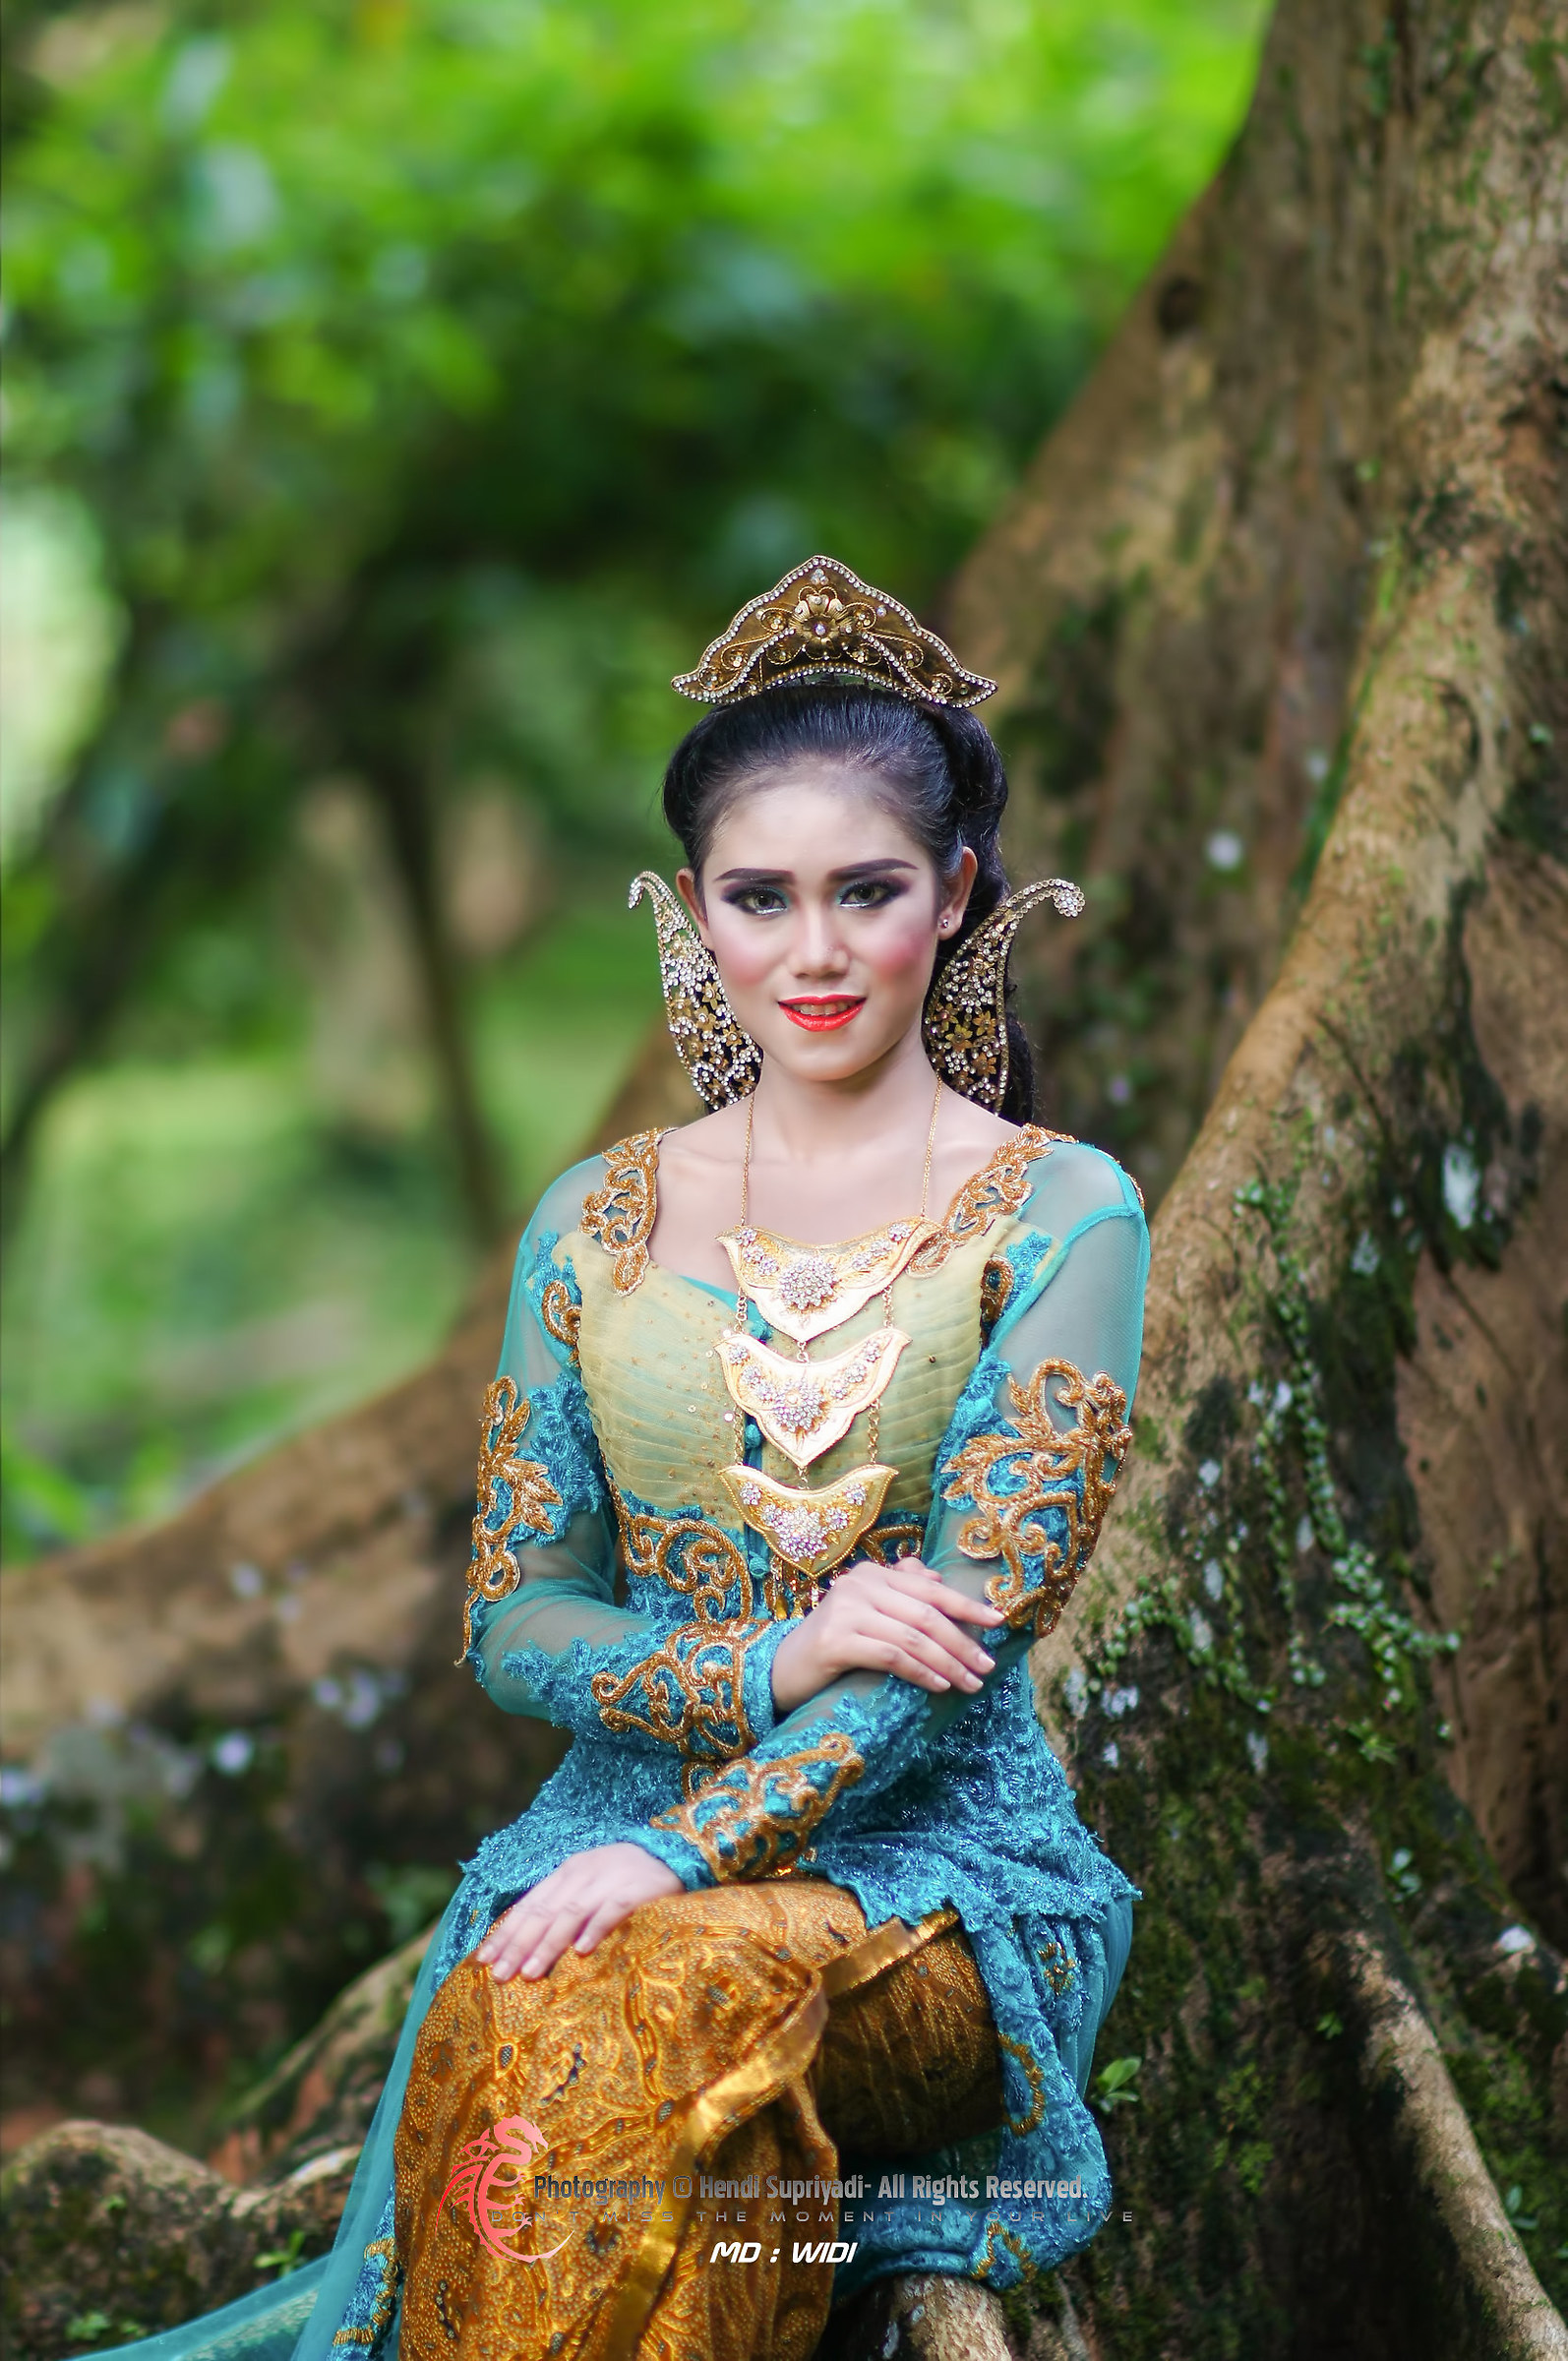 Vestiti tradizionali dall'indonesia...